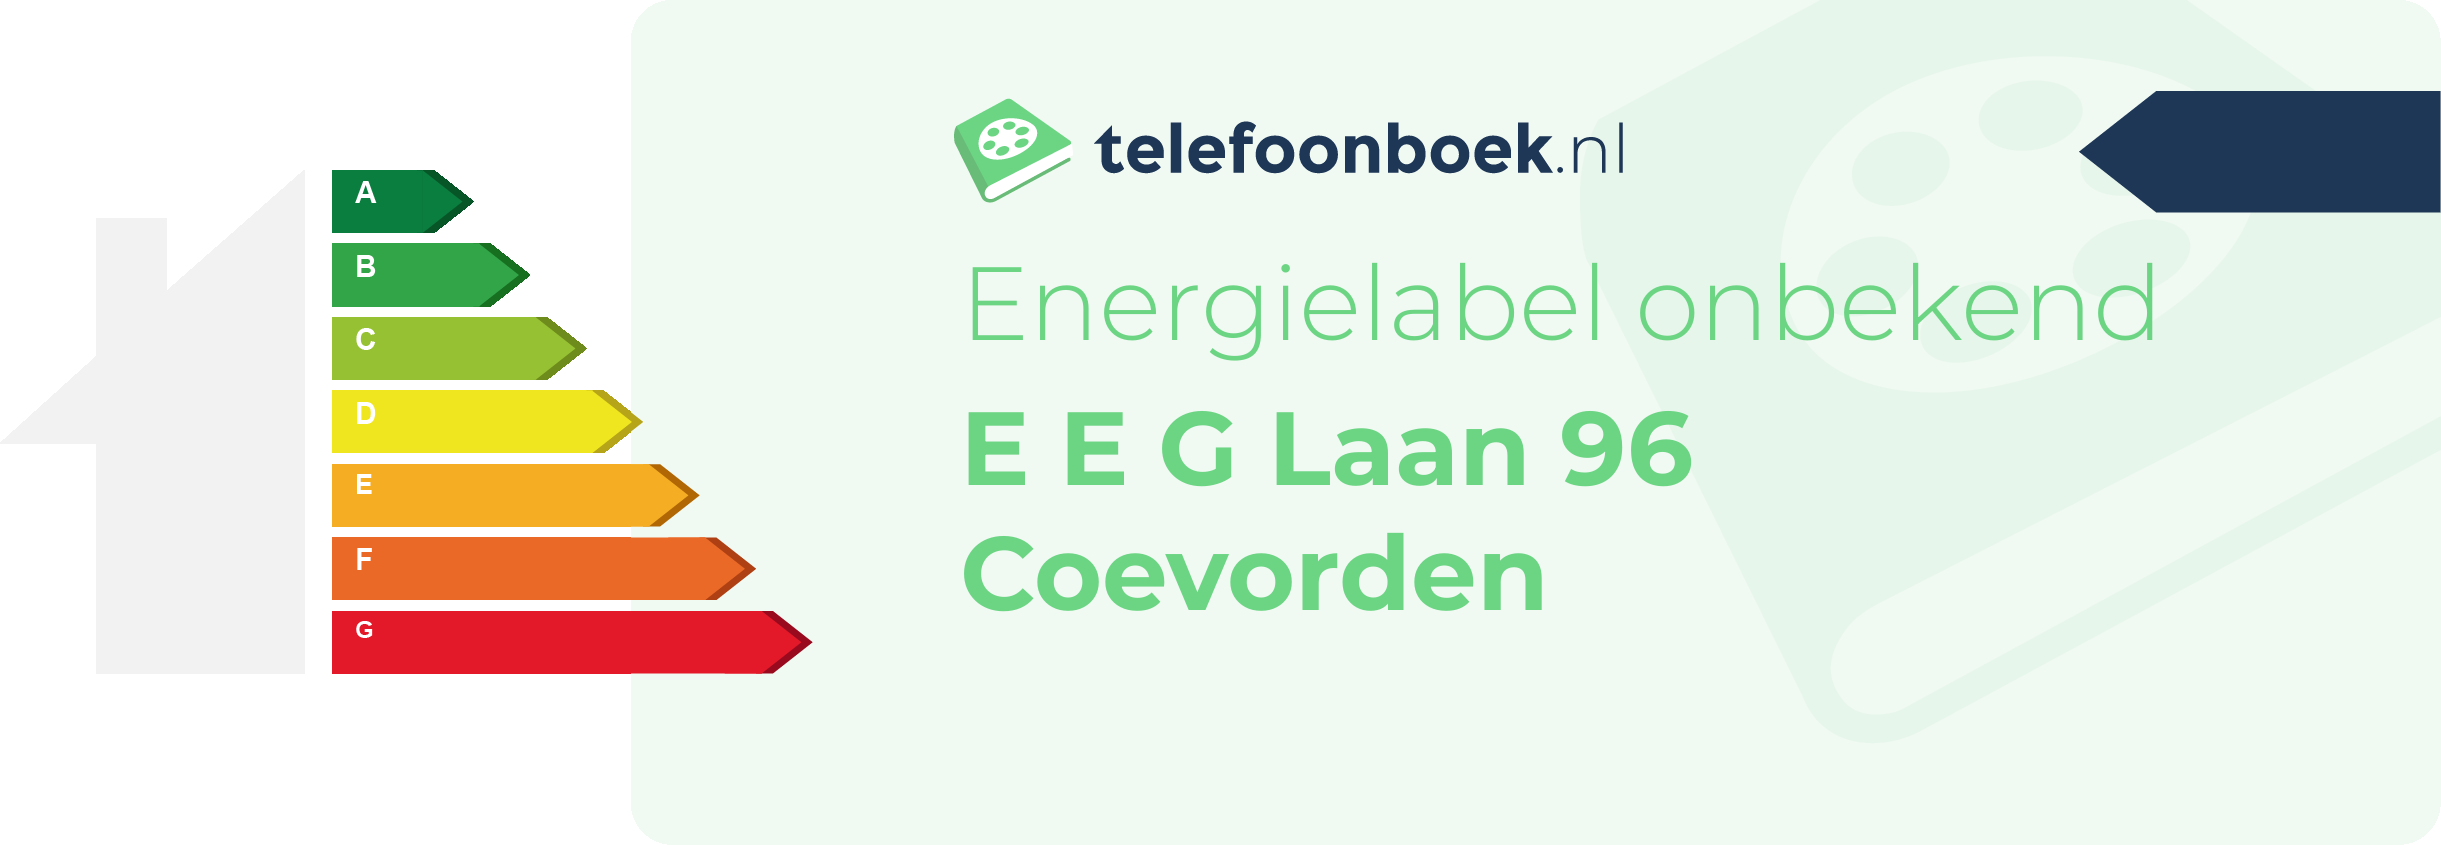 Energielabel E E G Laan 96 Coevorden